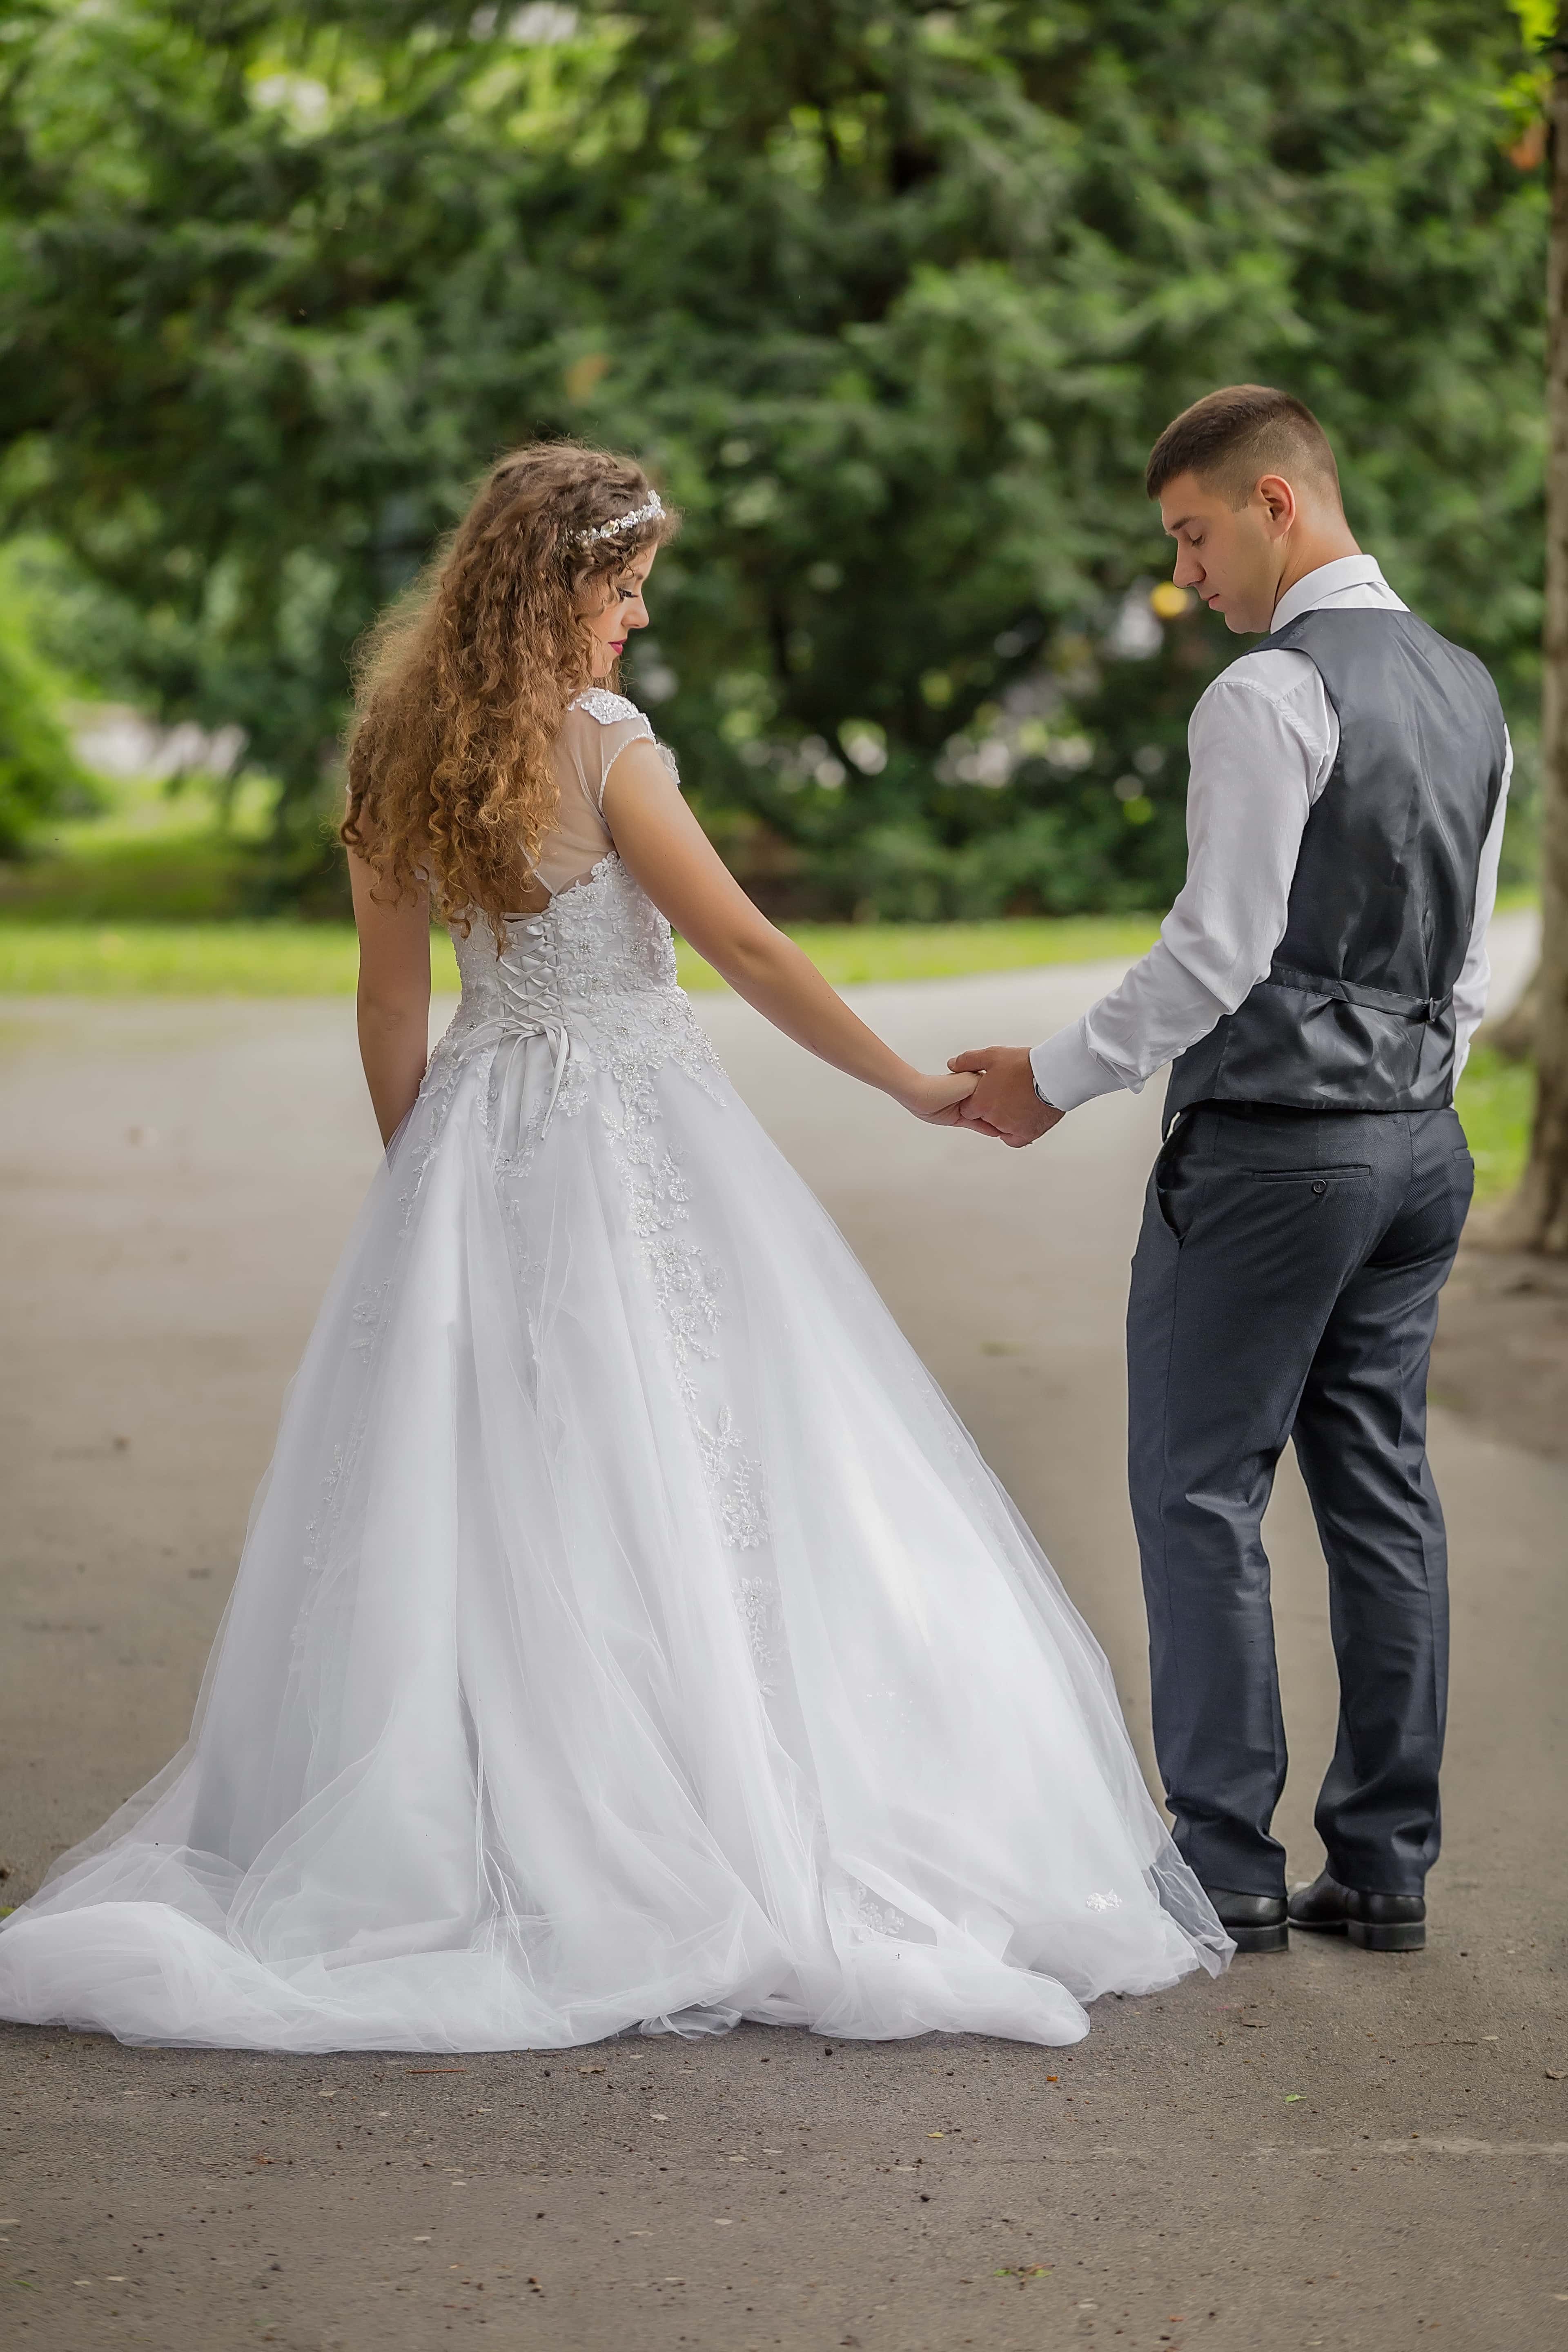 Можно ли жениху видеть платье невесты